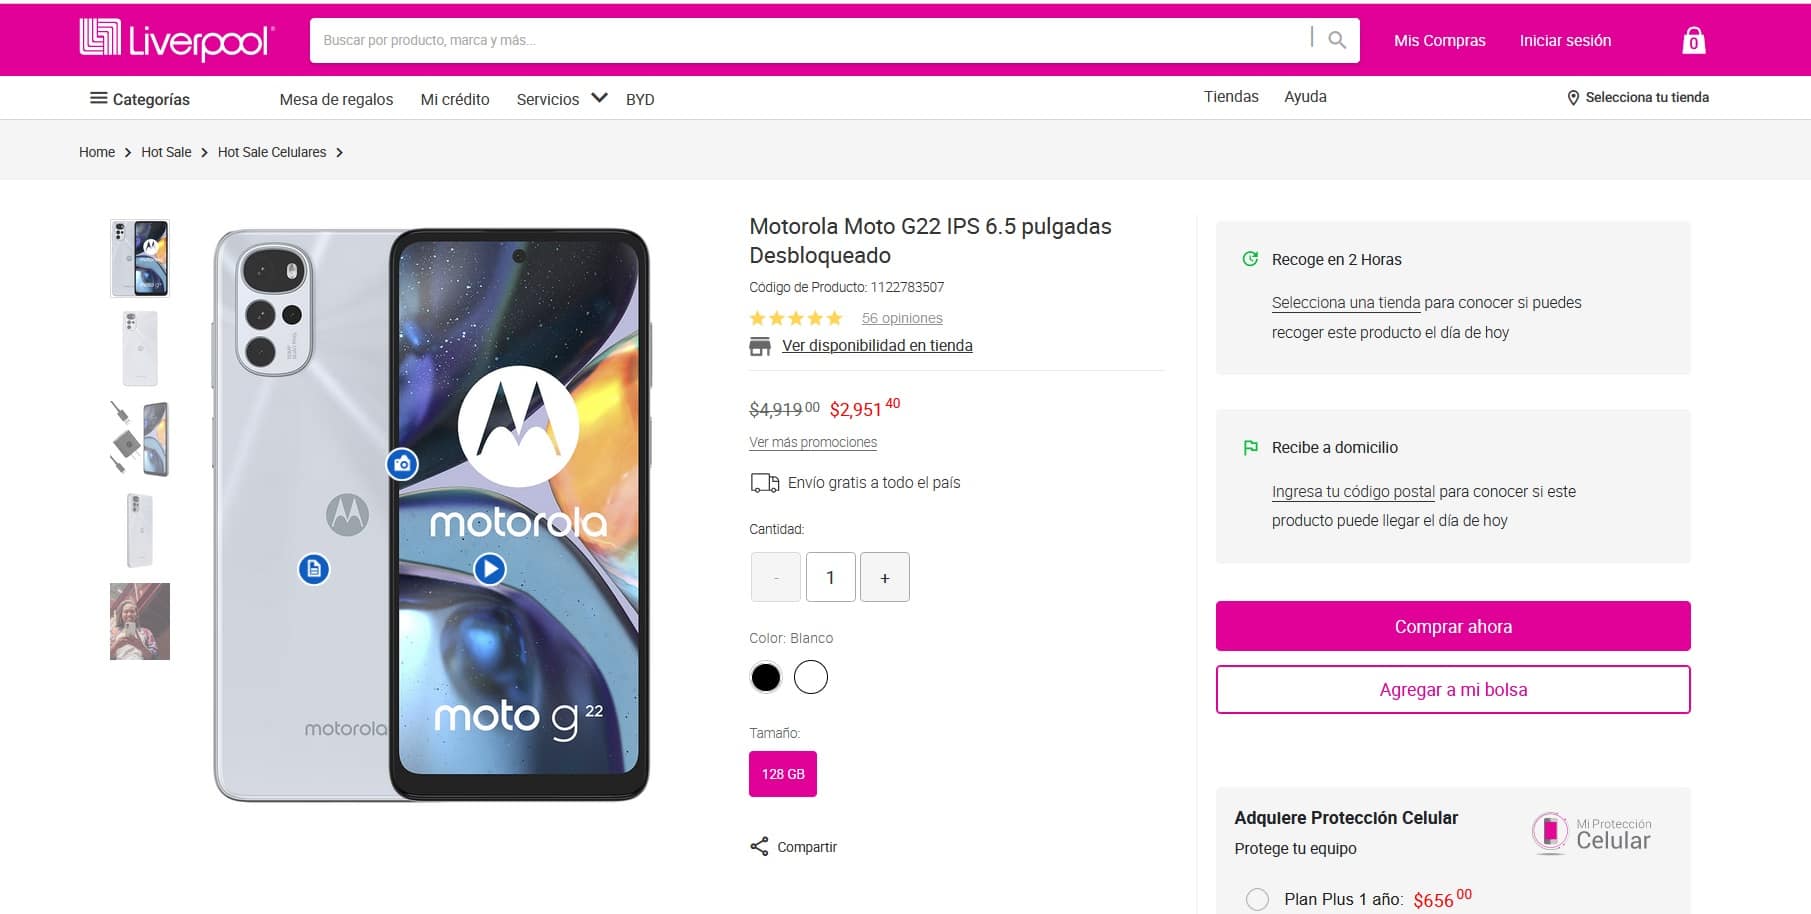 Smartphone Motorola Moto G22 con descuento